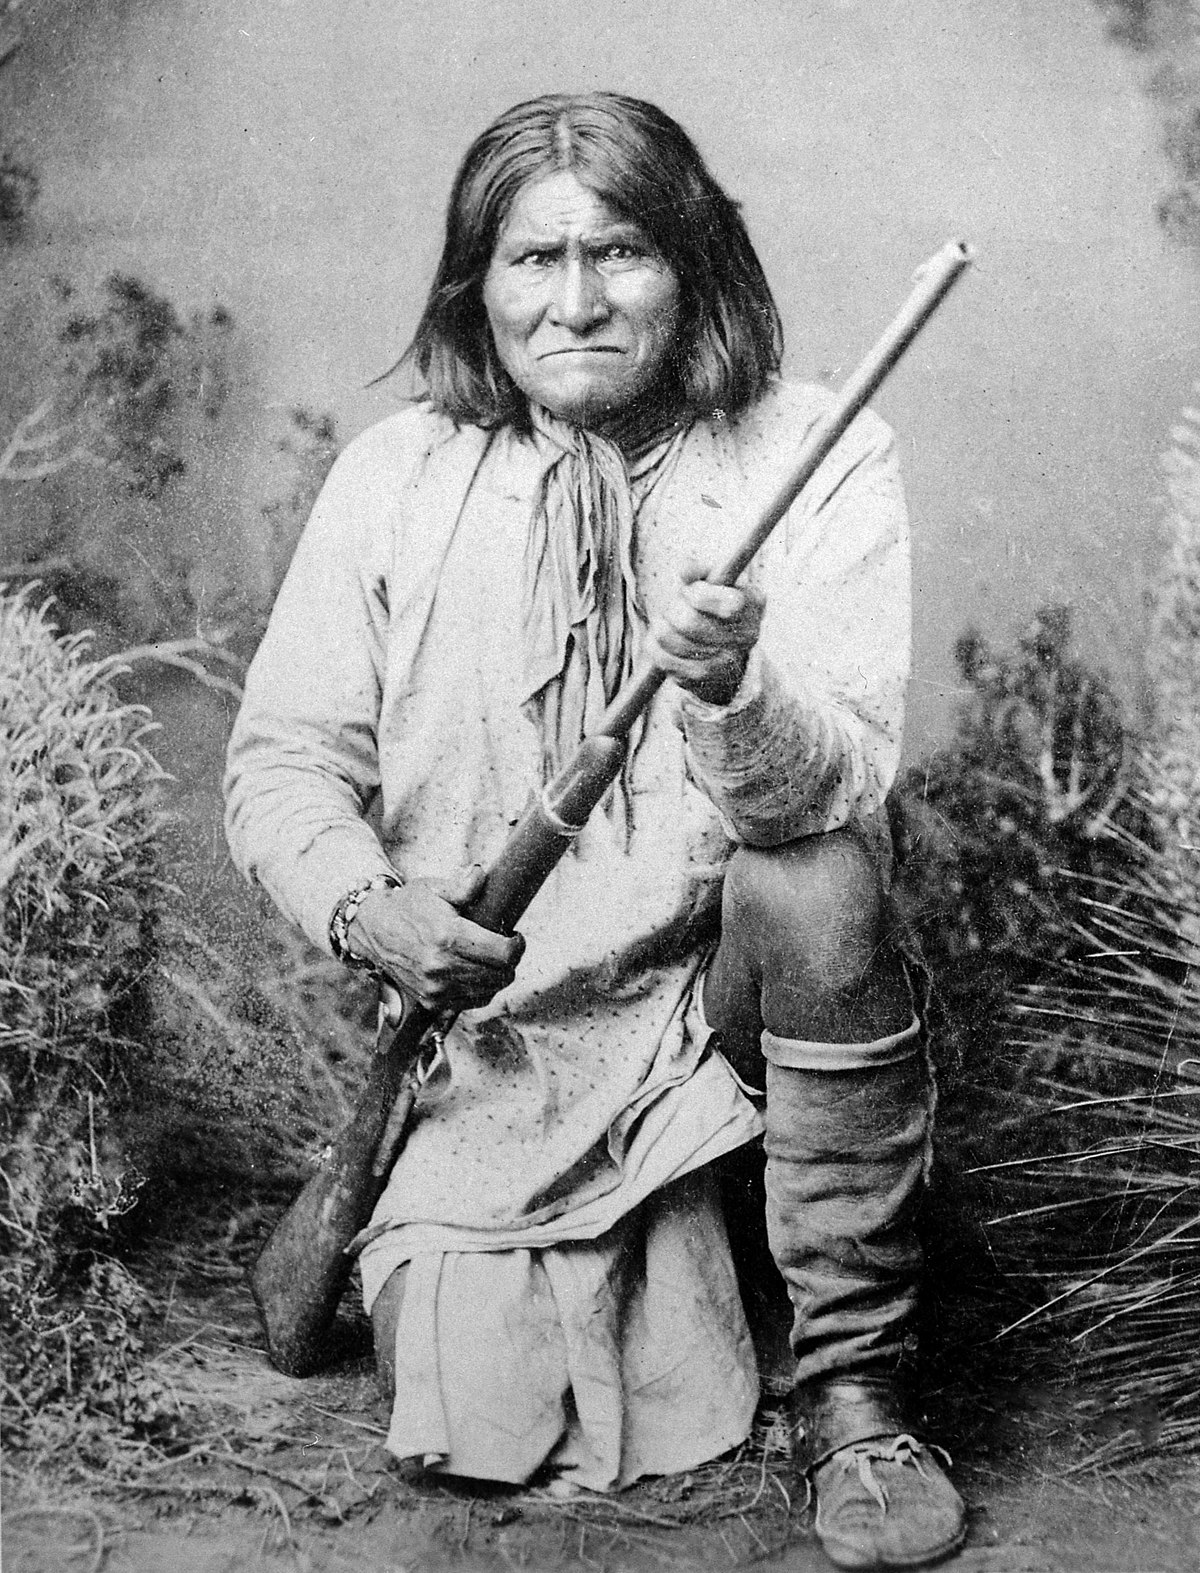  Geronimo biografija ir istorija